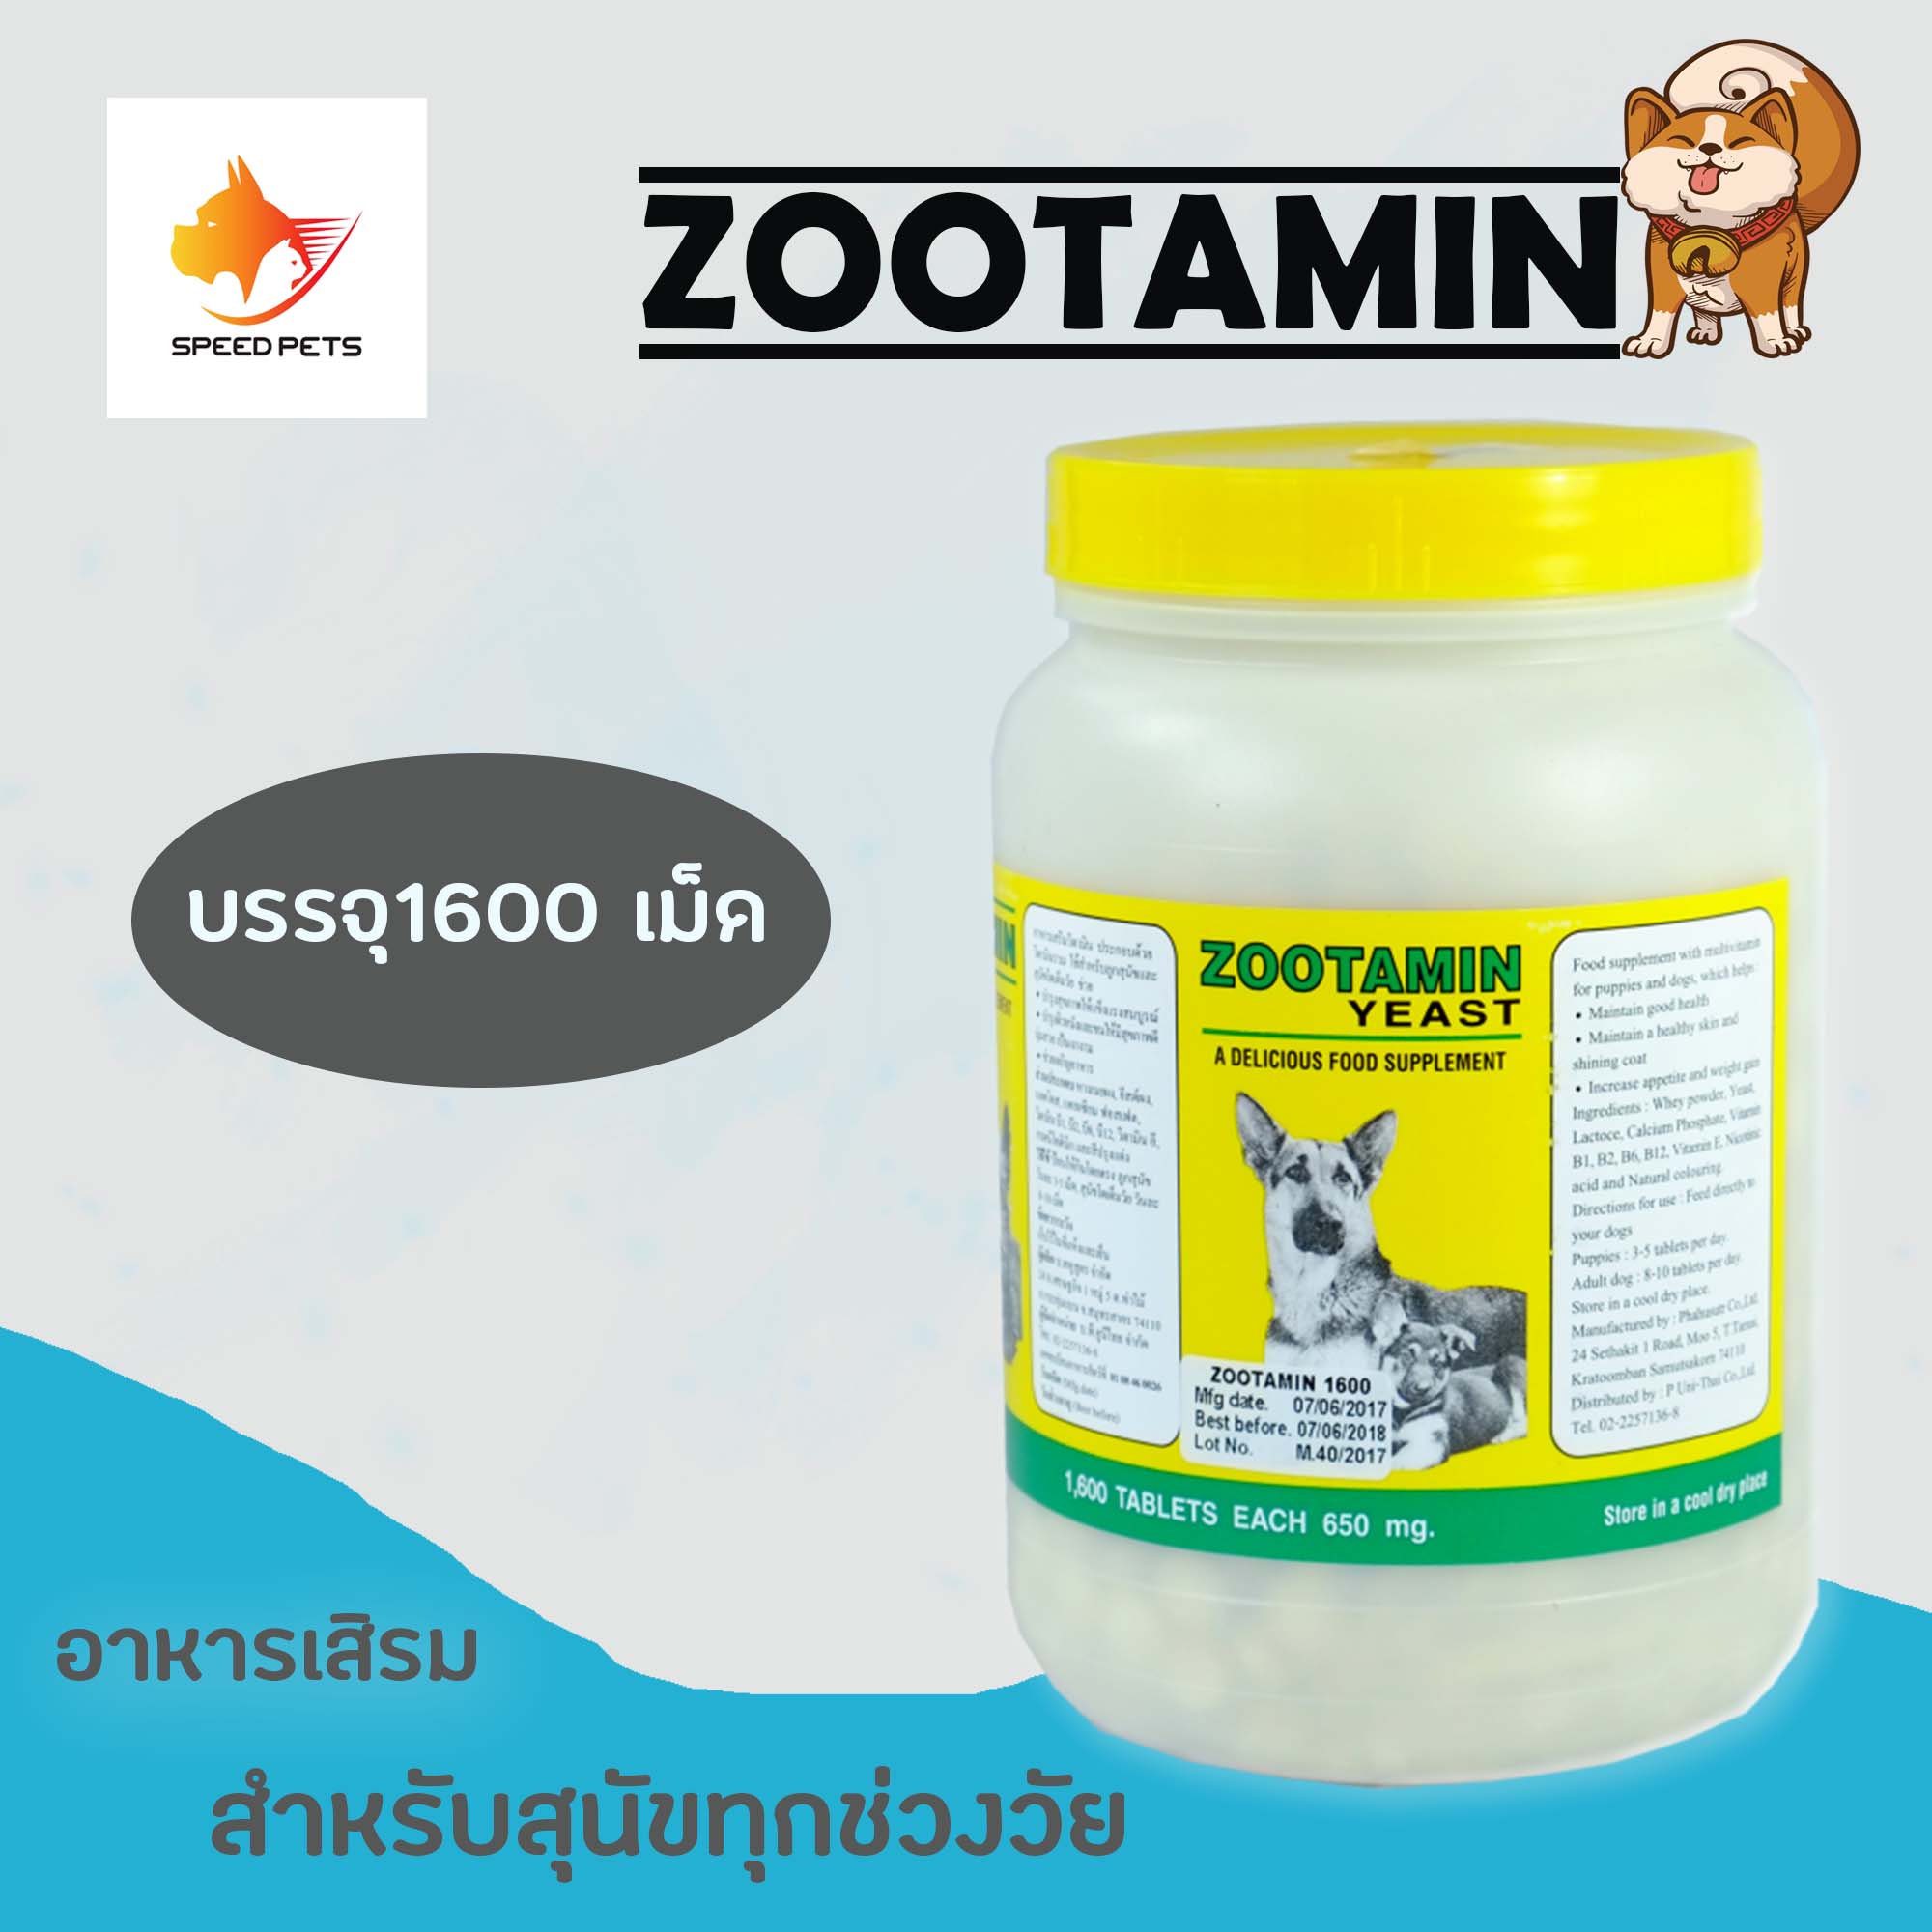 Zootamin 1600 อาหารเสริม วิตามิน ช่วยเจริญ อาหาร ขนาด 1,600 เม็ด